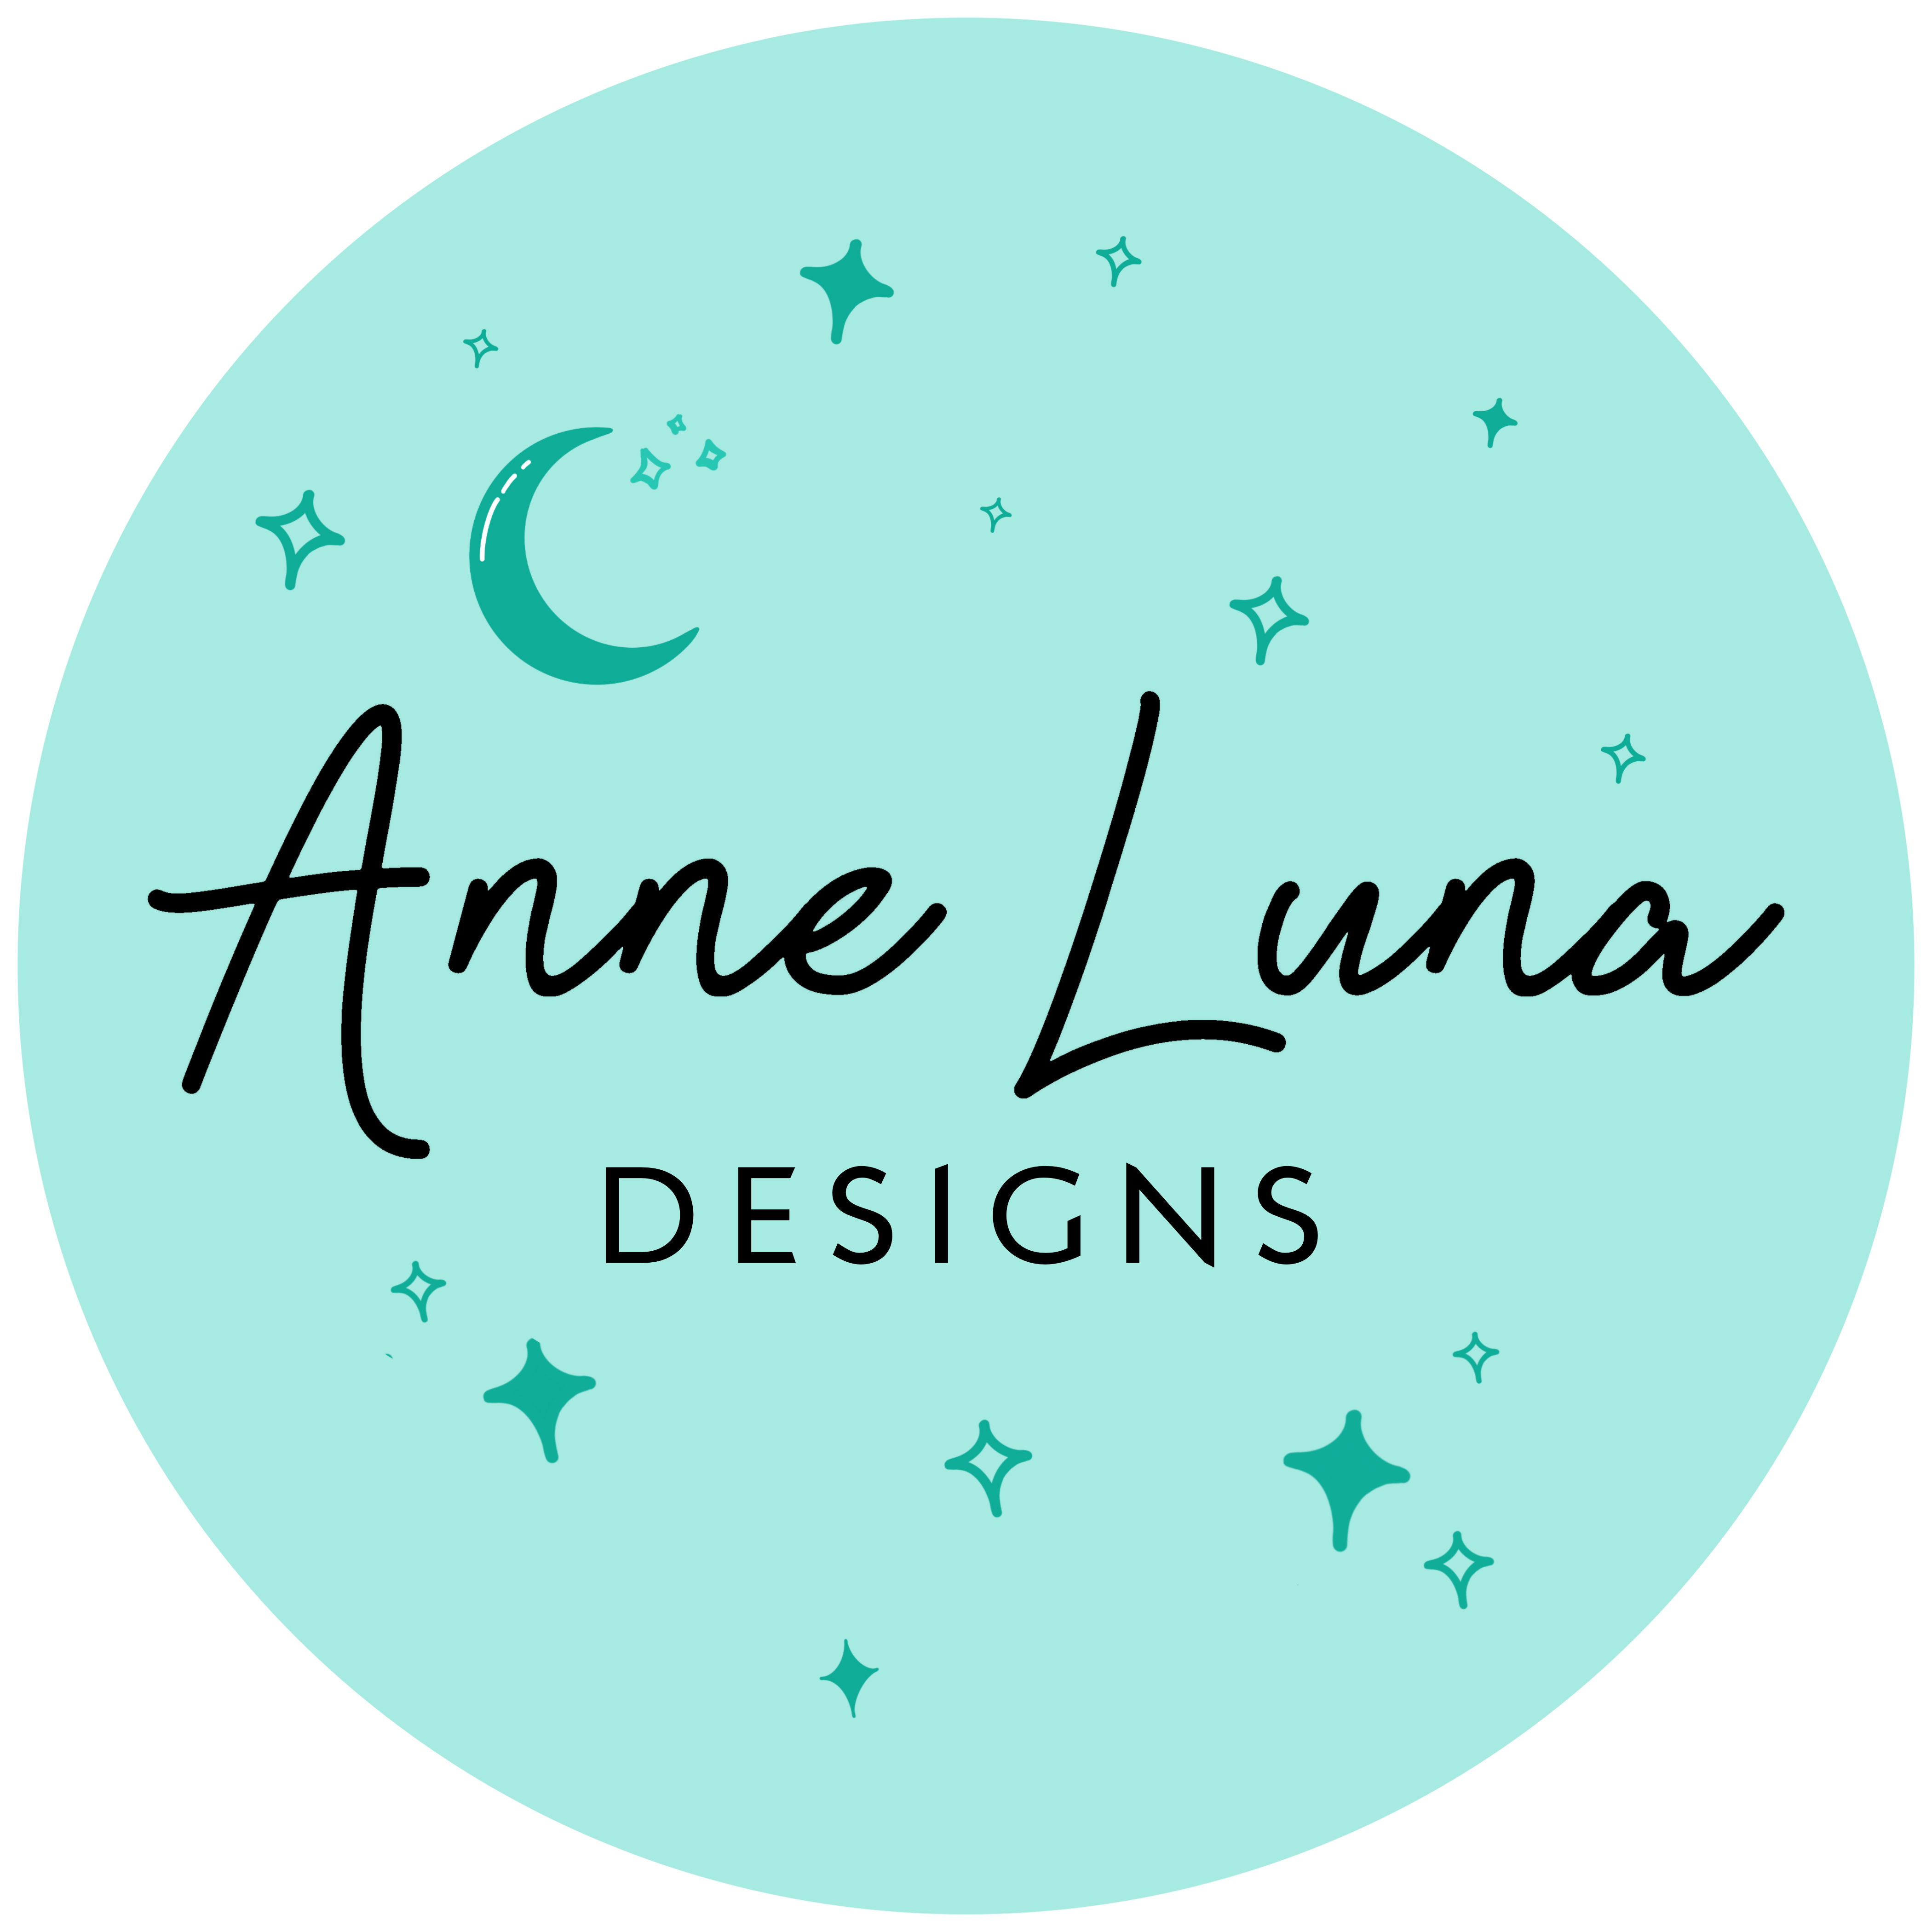 Anne Luna